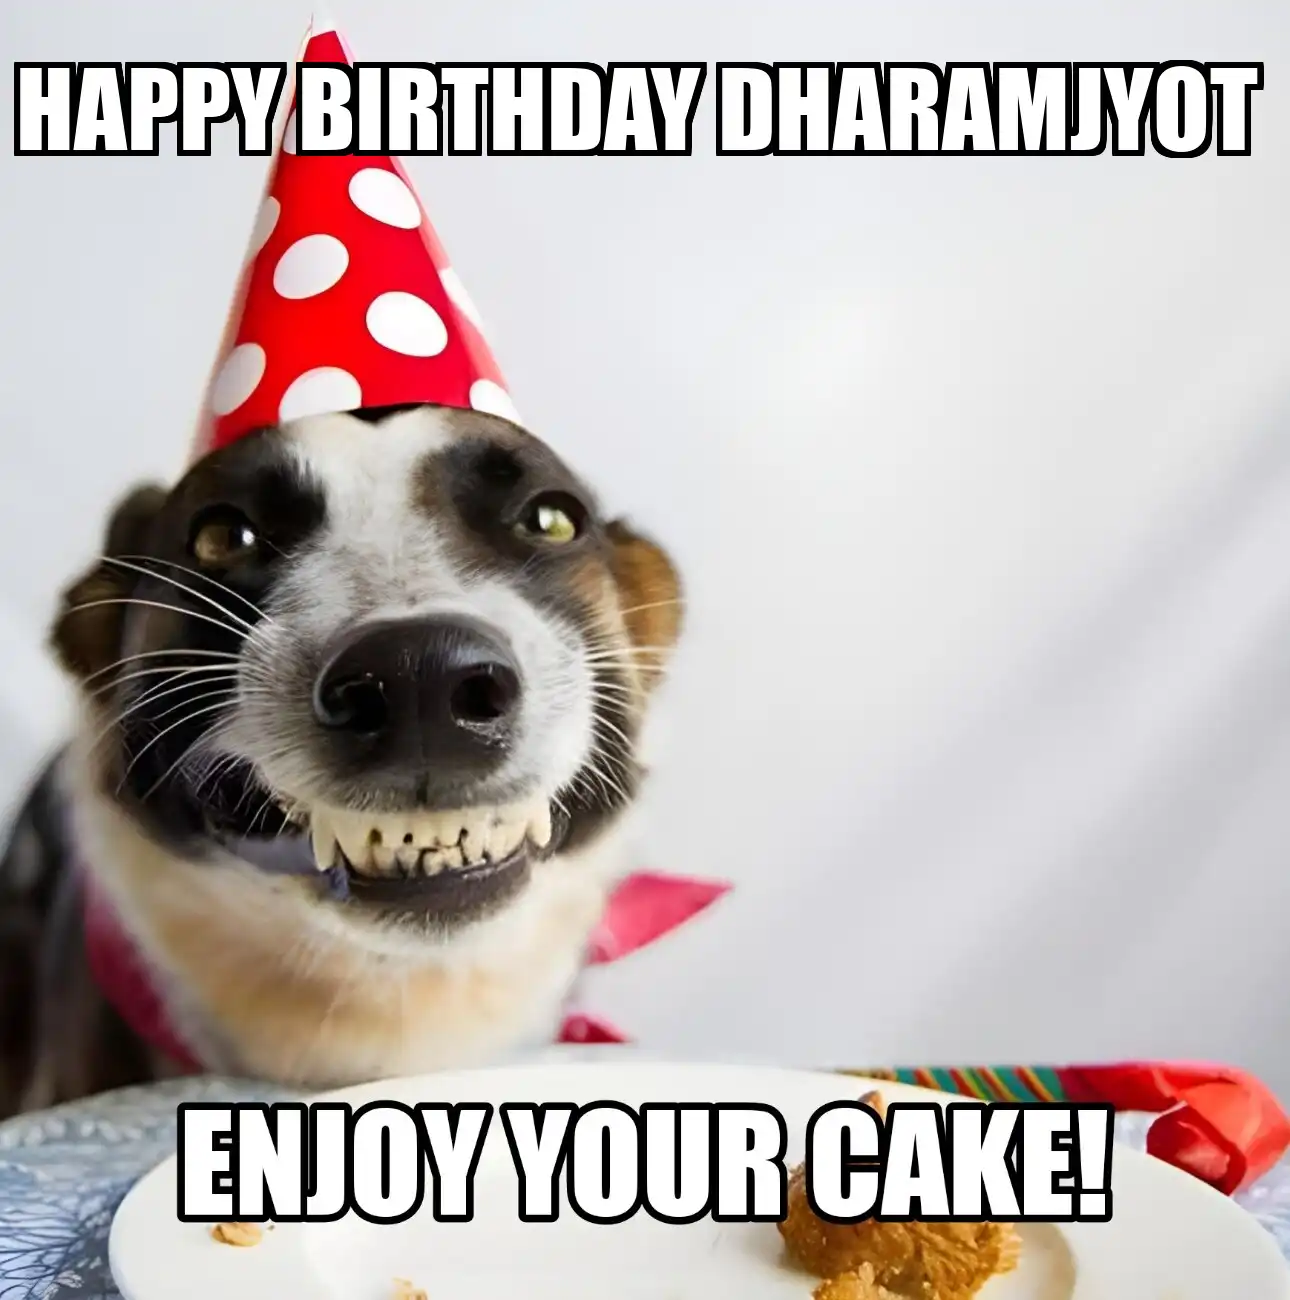 Happy Birthday Dharamjyot Enjoy Your Cake Dog Meme